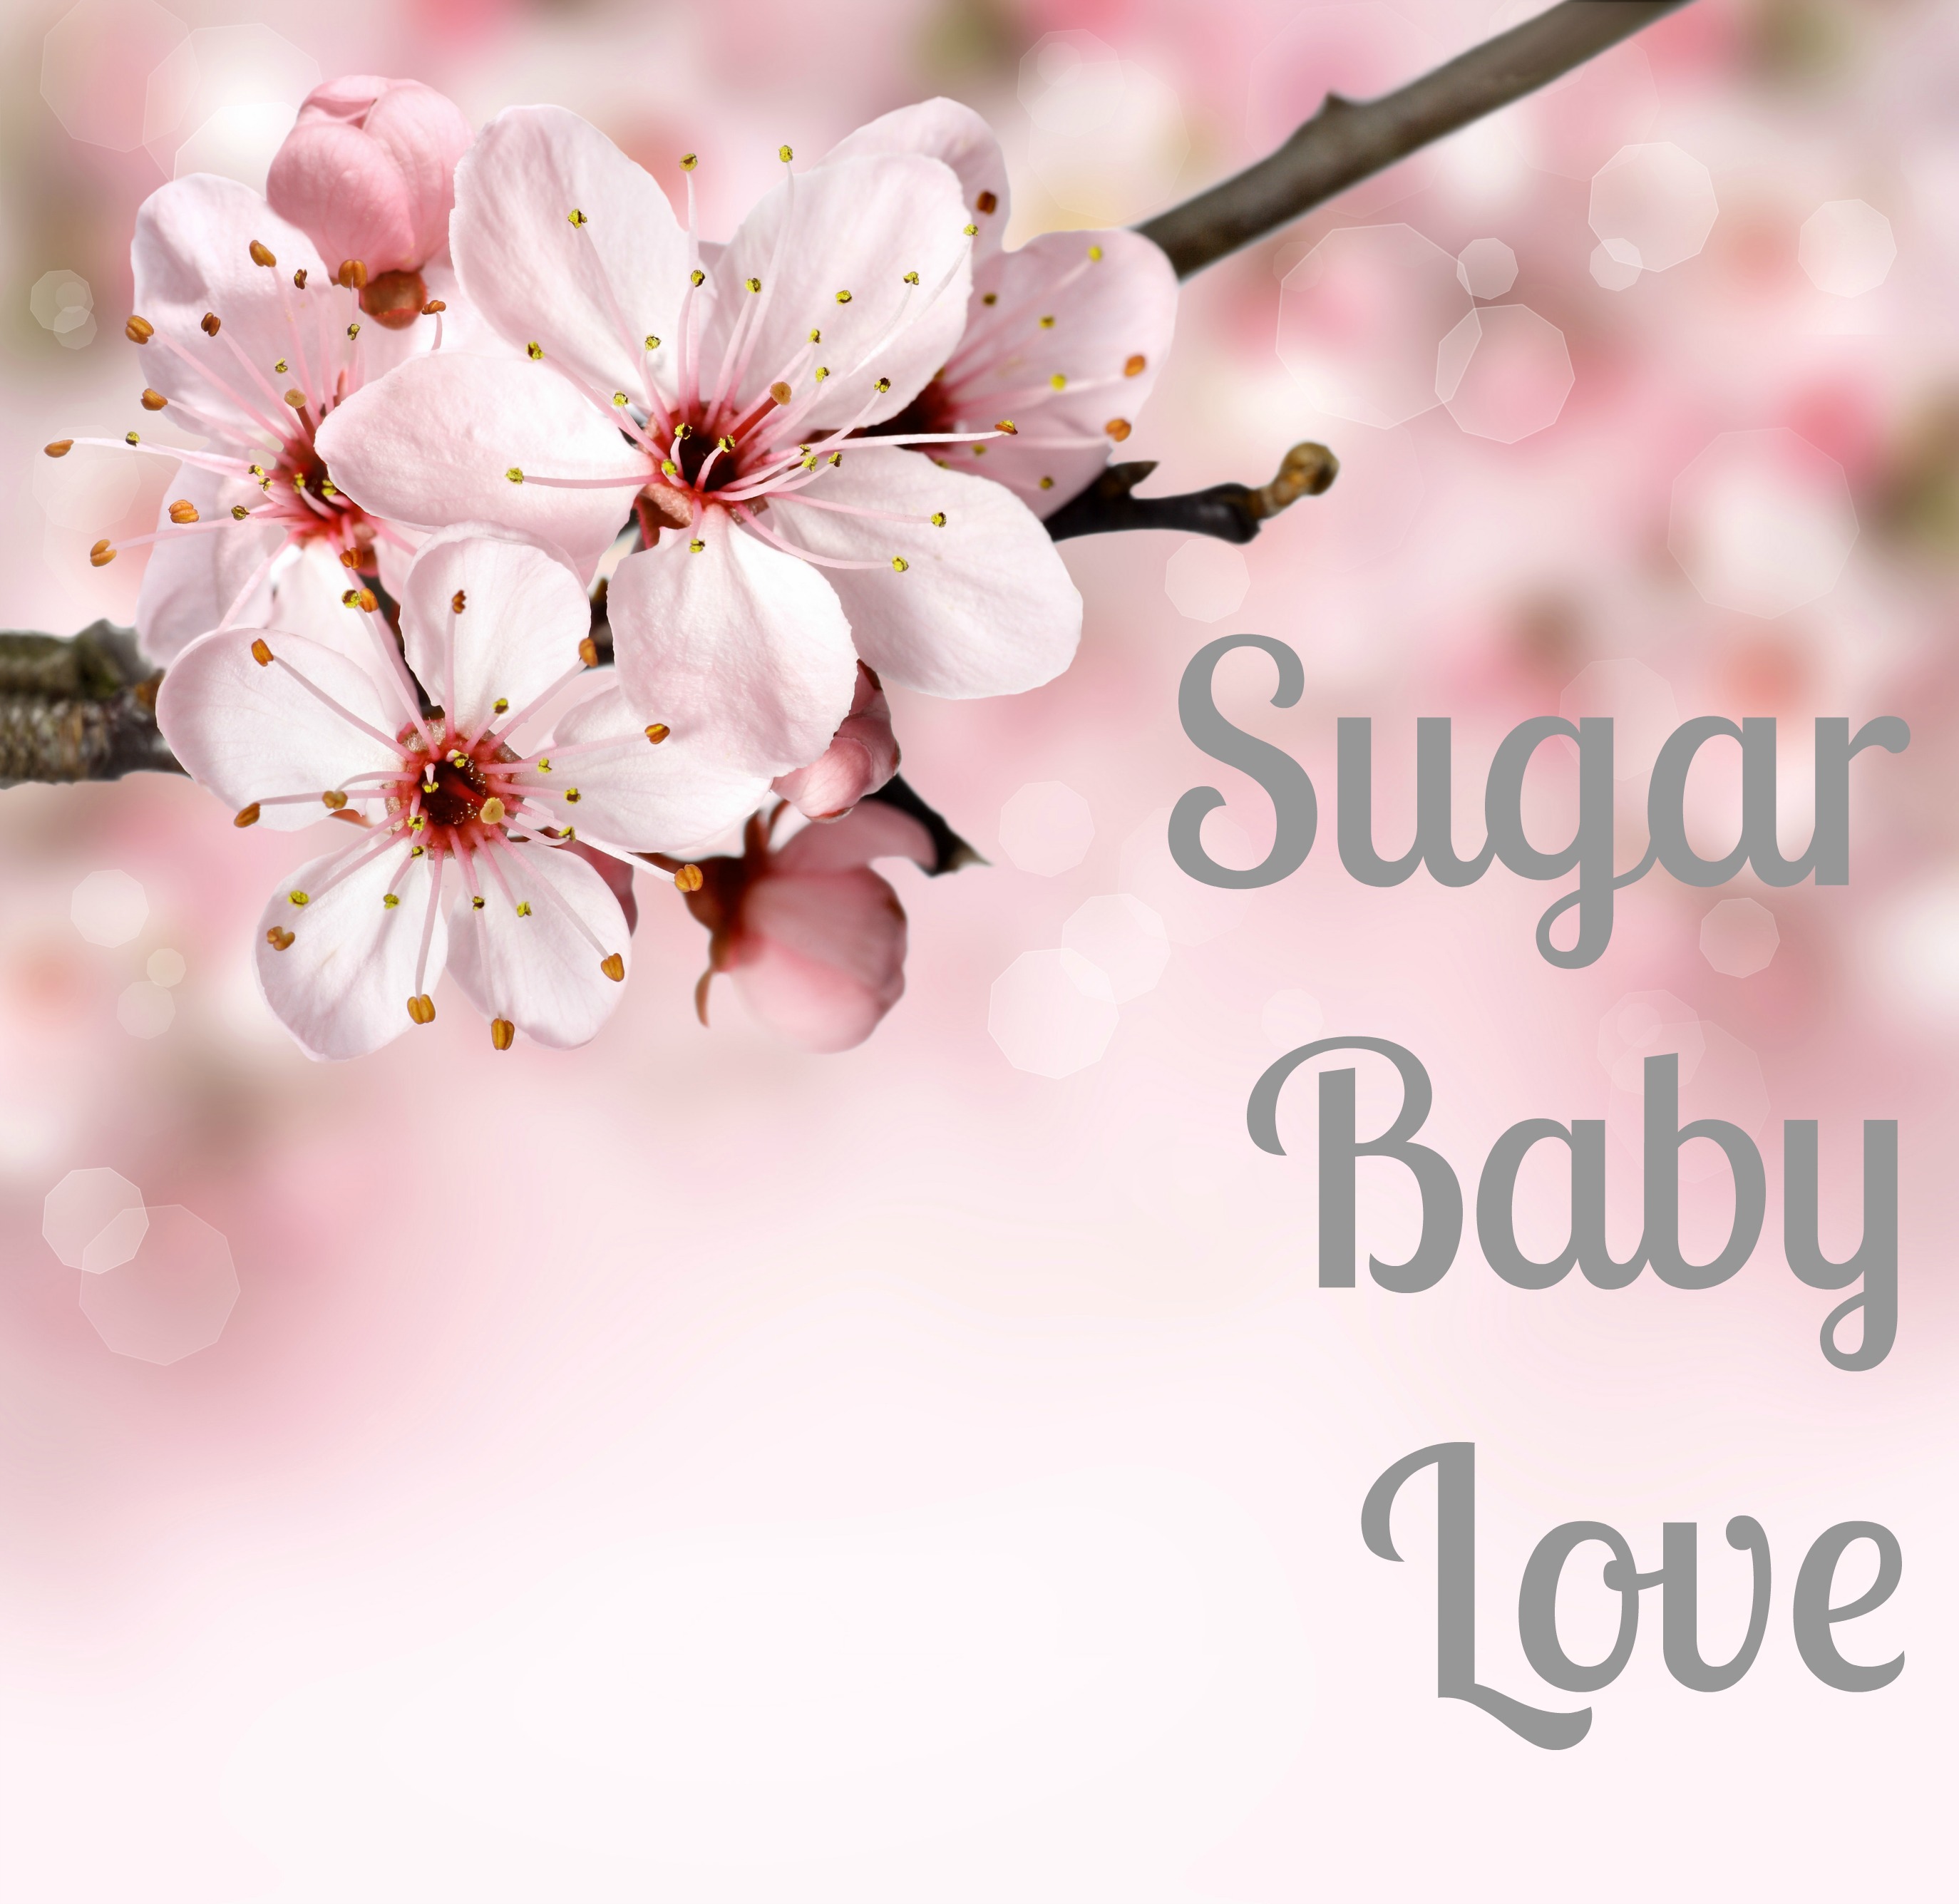 Sugar Baby Love/Snow flower